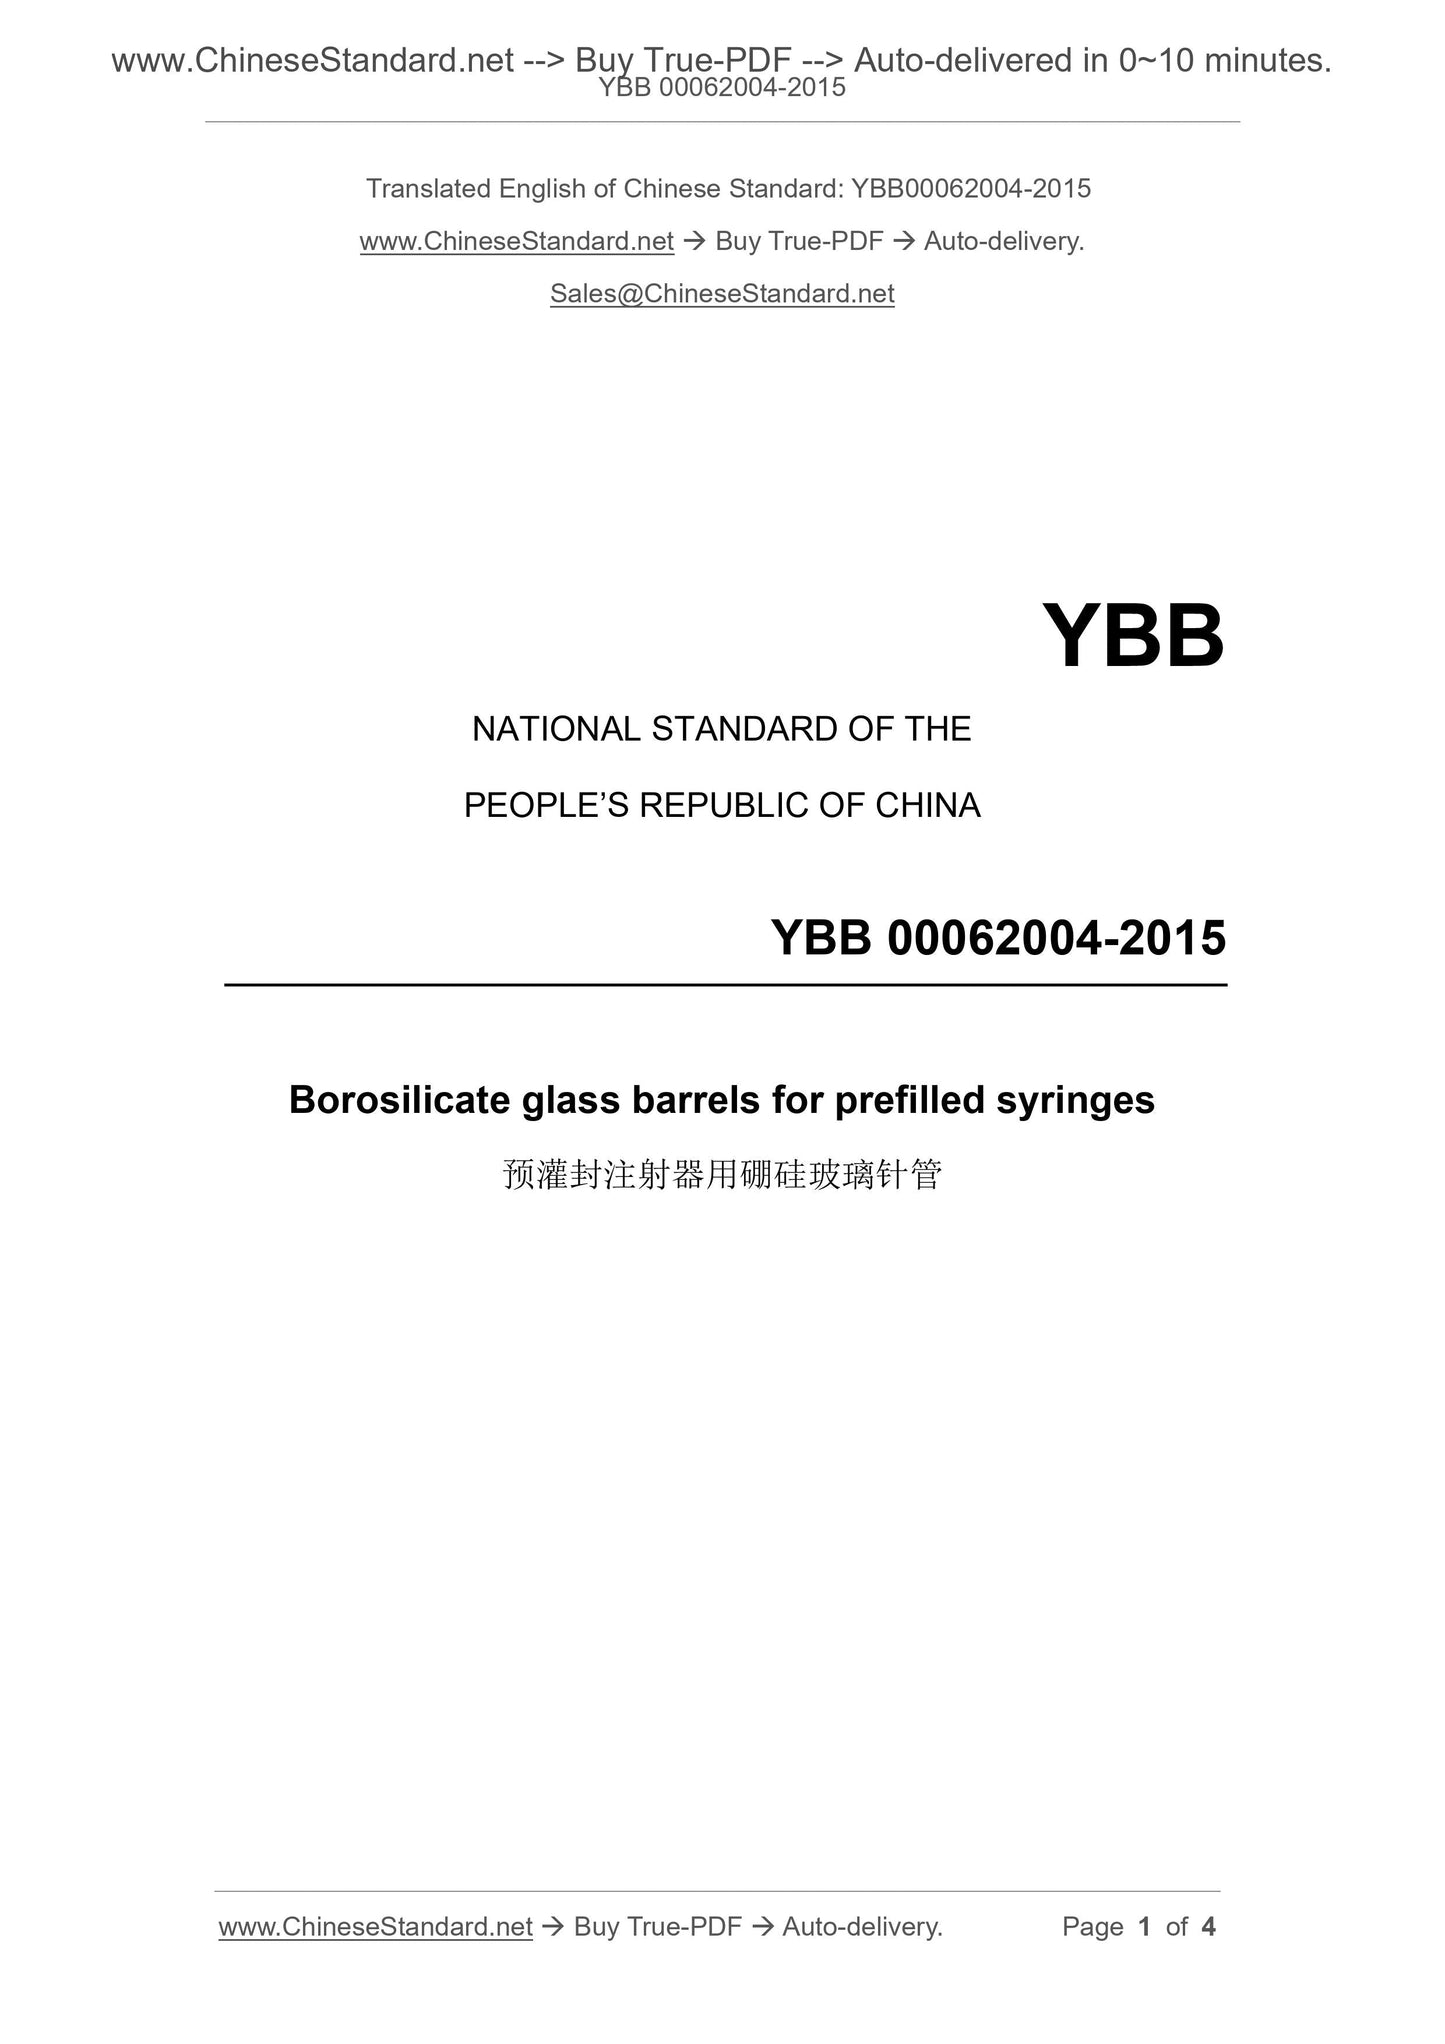 YBB 00062004-2015 Page 1